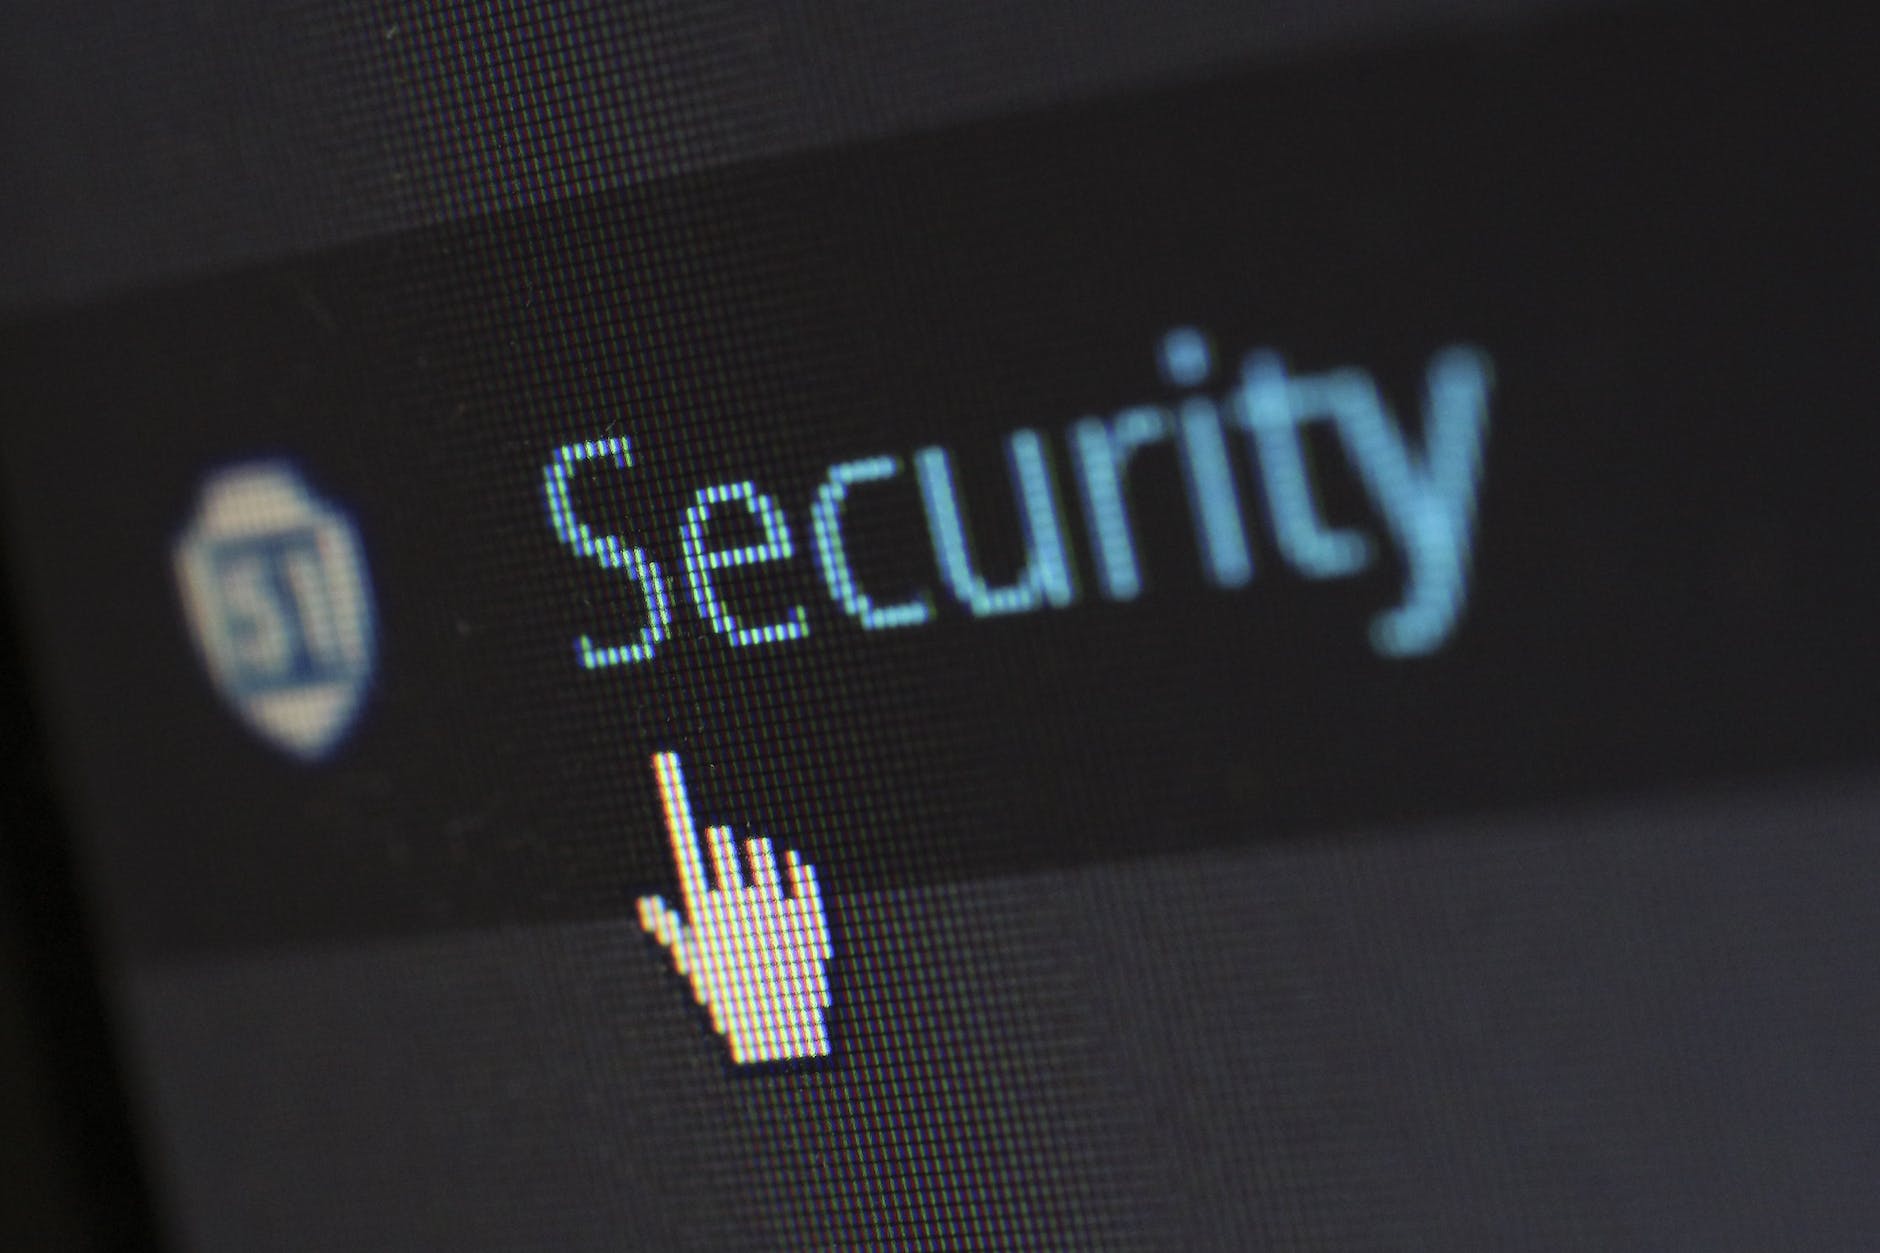 security logo
Zapobieganie kradzieży tożsamości